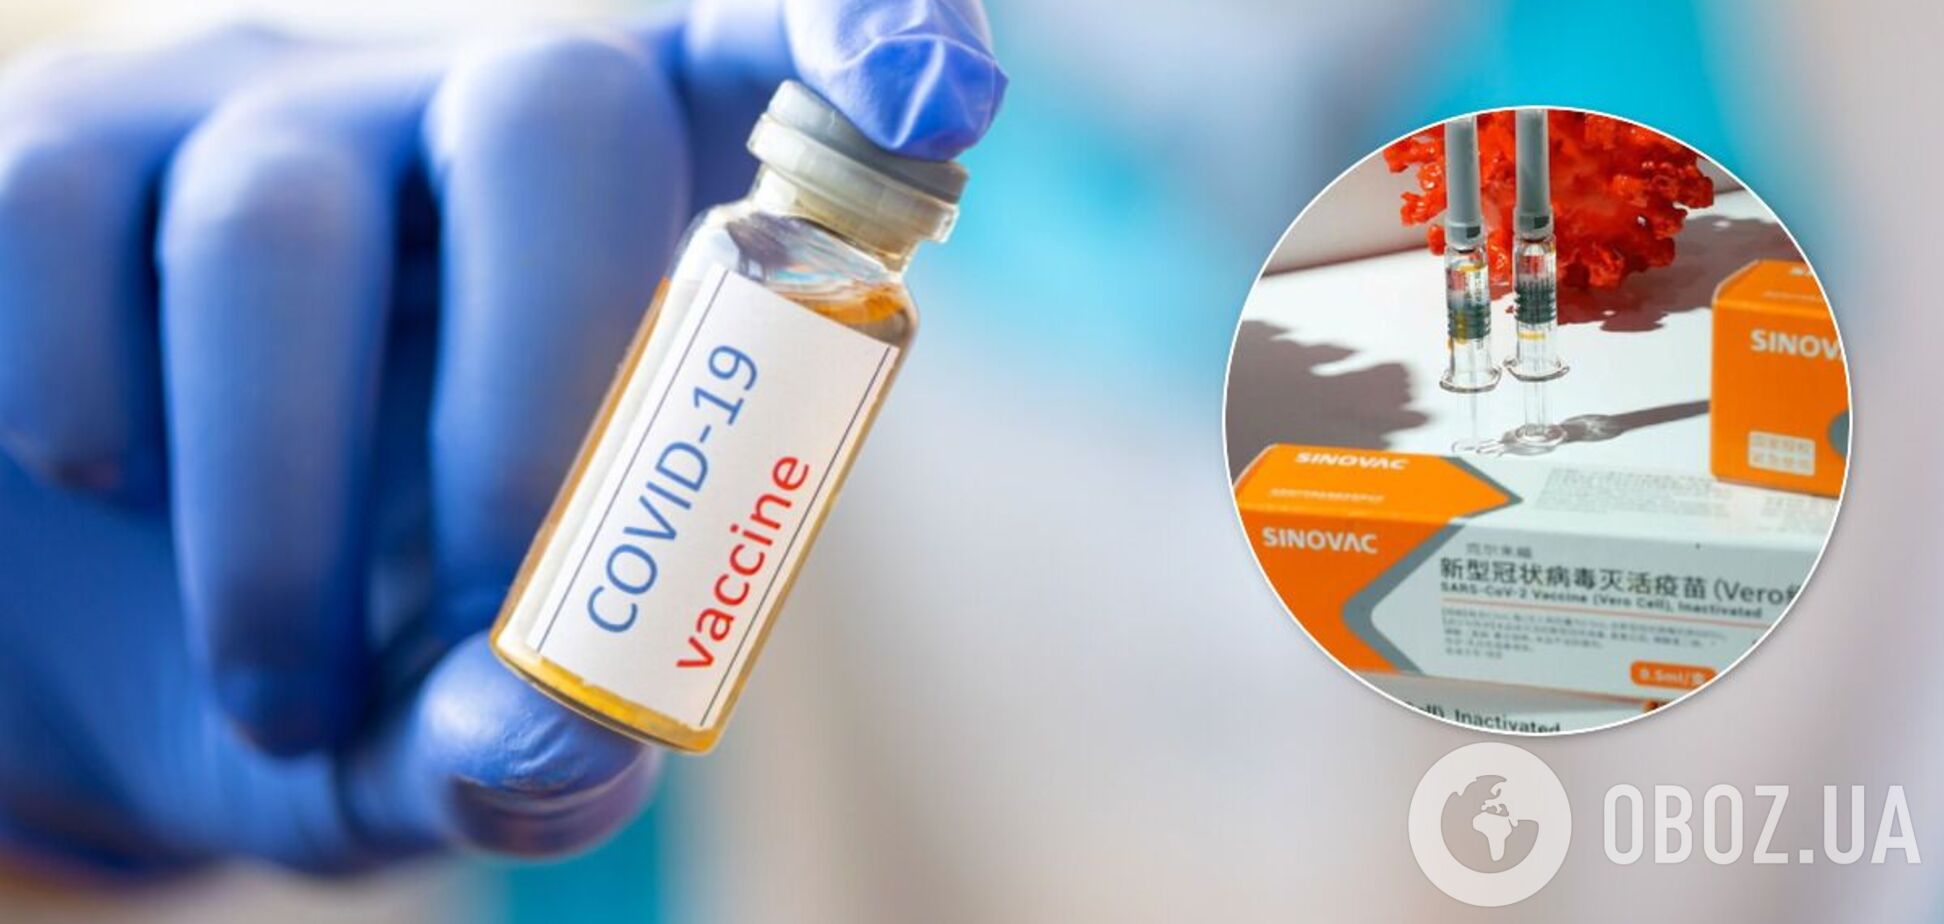 Украинцы возмутились закупкой китайской вакцины против COVID-19 по самой высокой цене